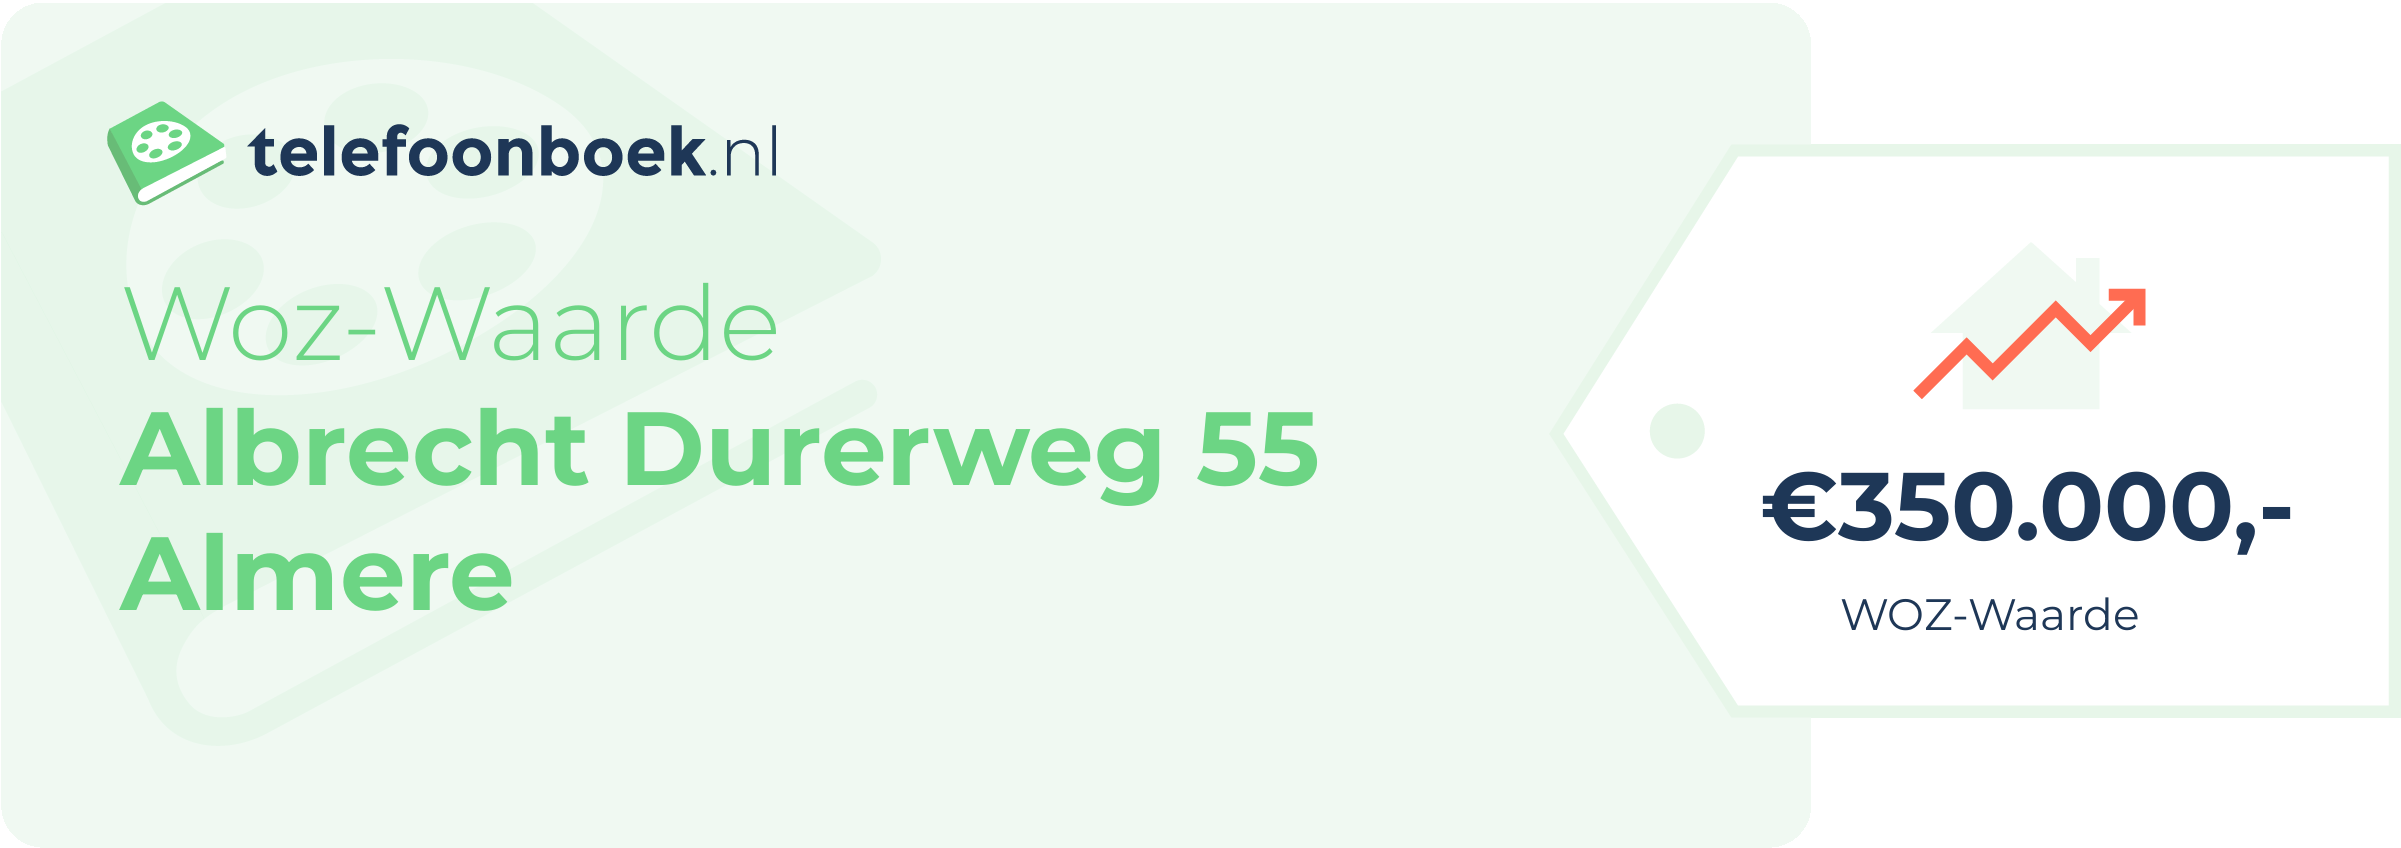 WOZ-waarde Albrecht Durerweg 55 Almere